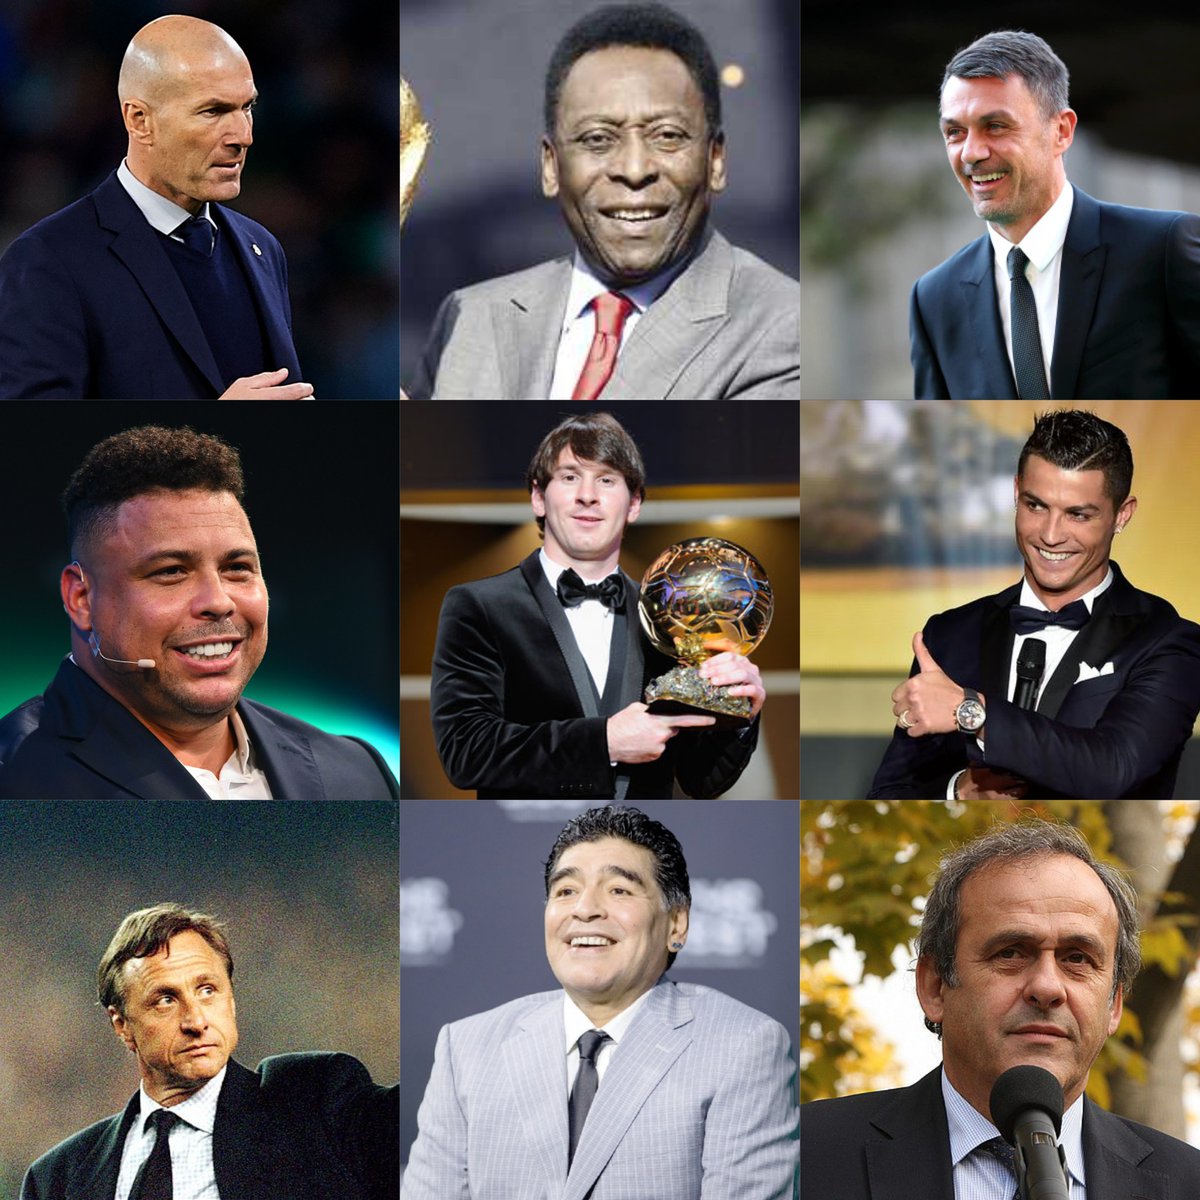 من هو أفضل لاعب كرة قدم في التاريخ برأيكم ؟؟؟!!

#سؤال_جواب 
#تقسيماتي